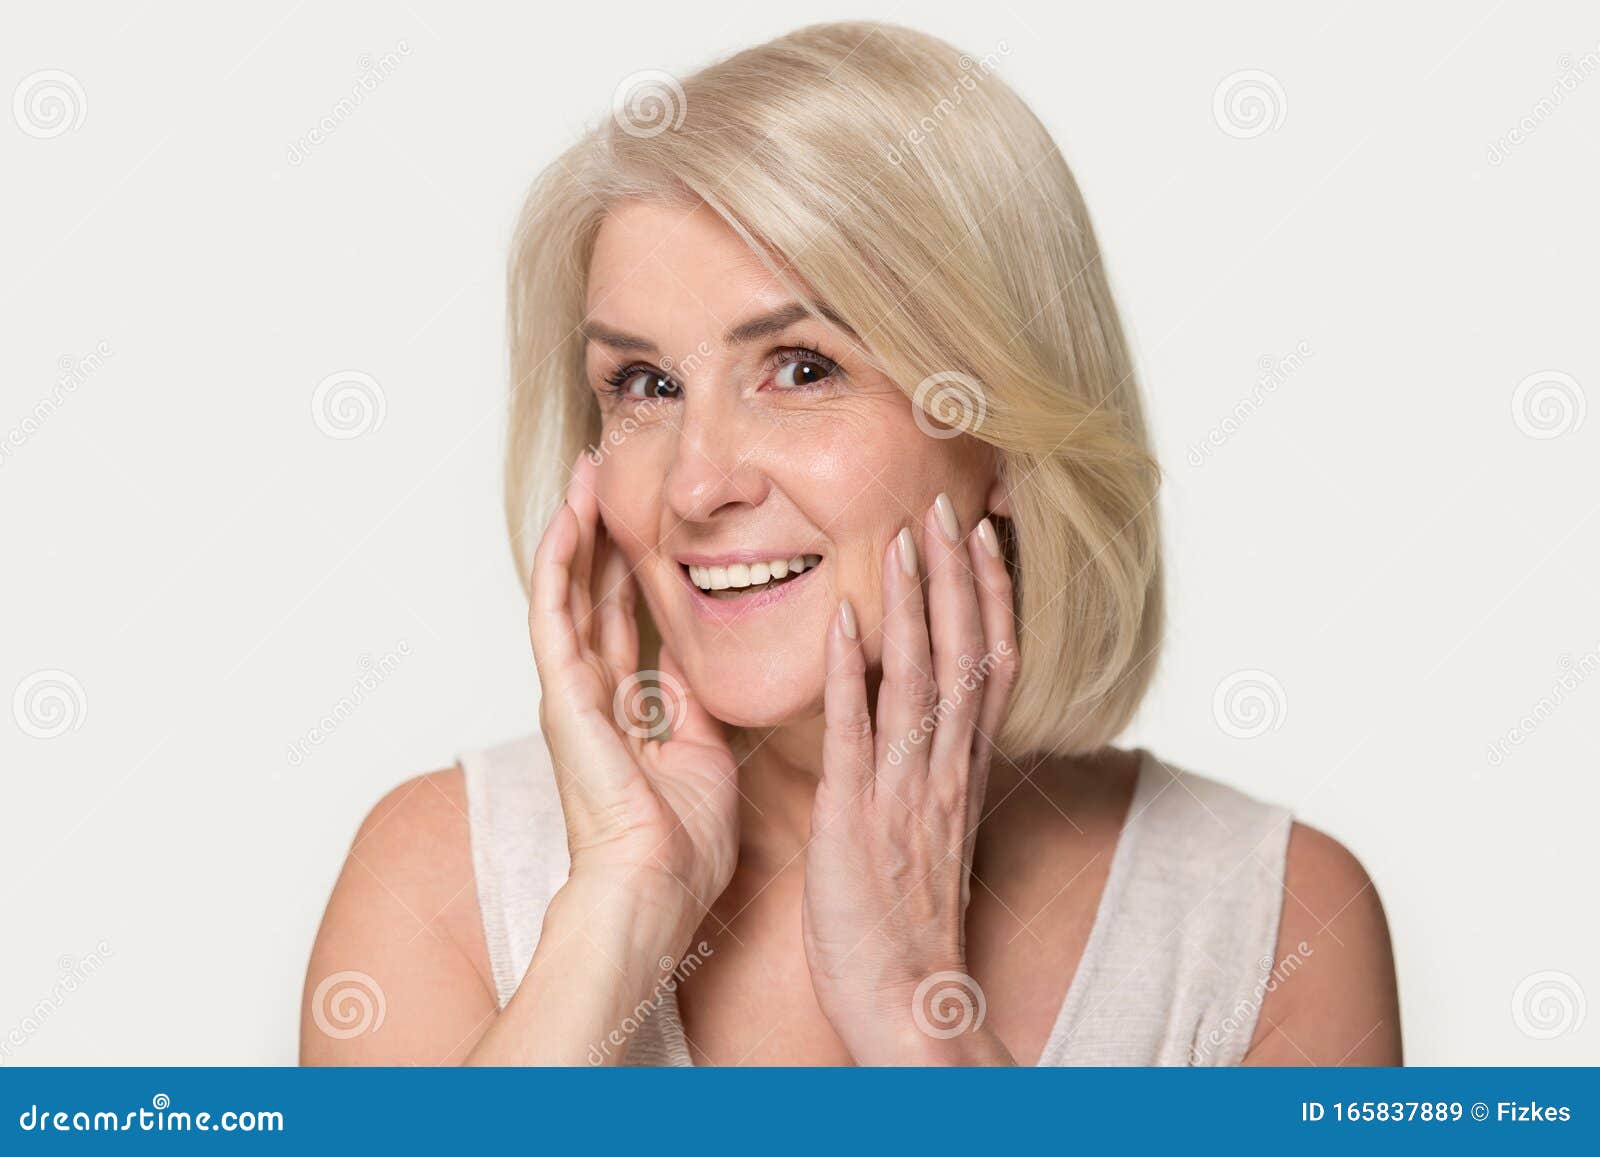 mature woman touching herself up pics